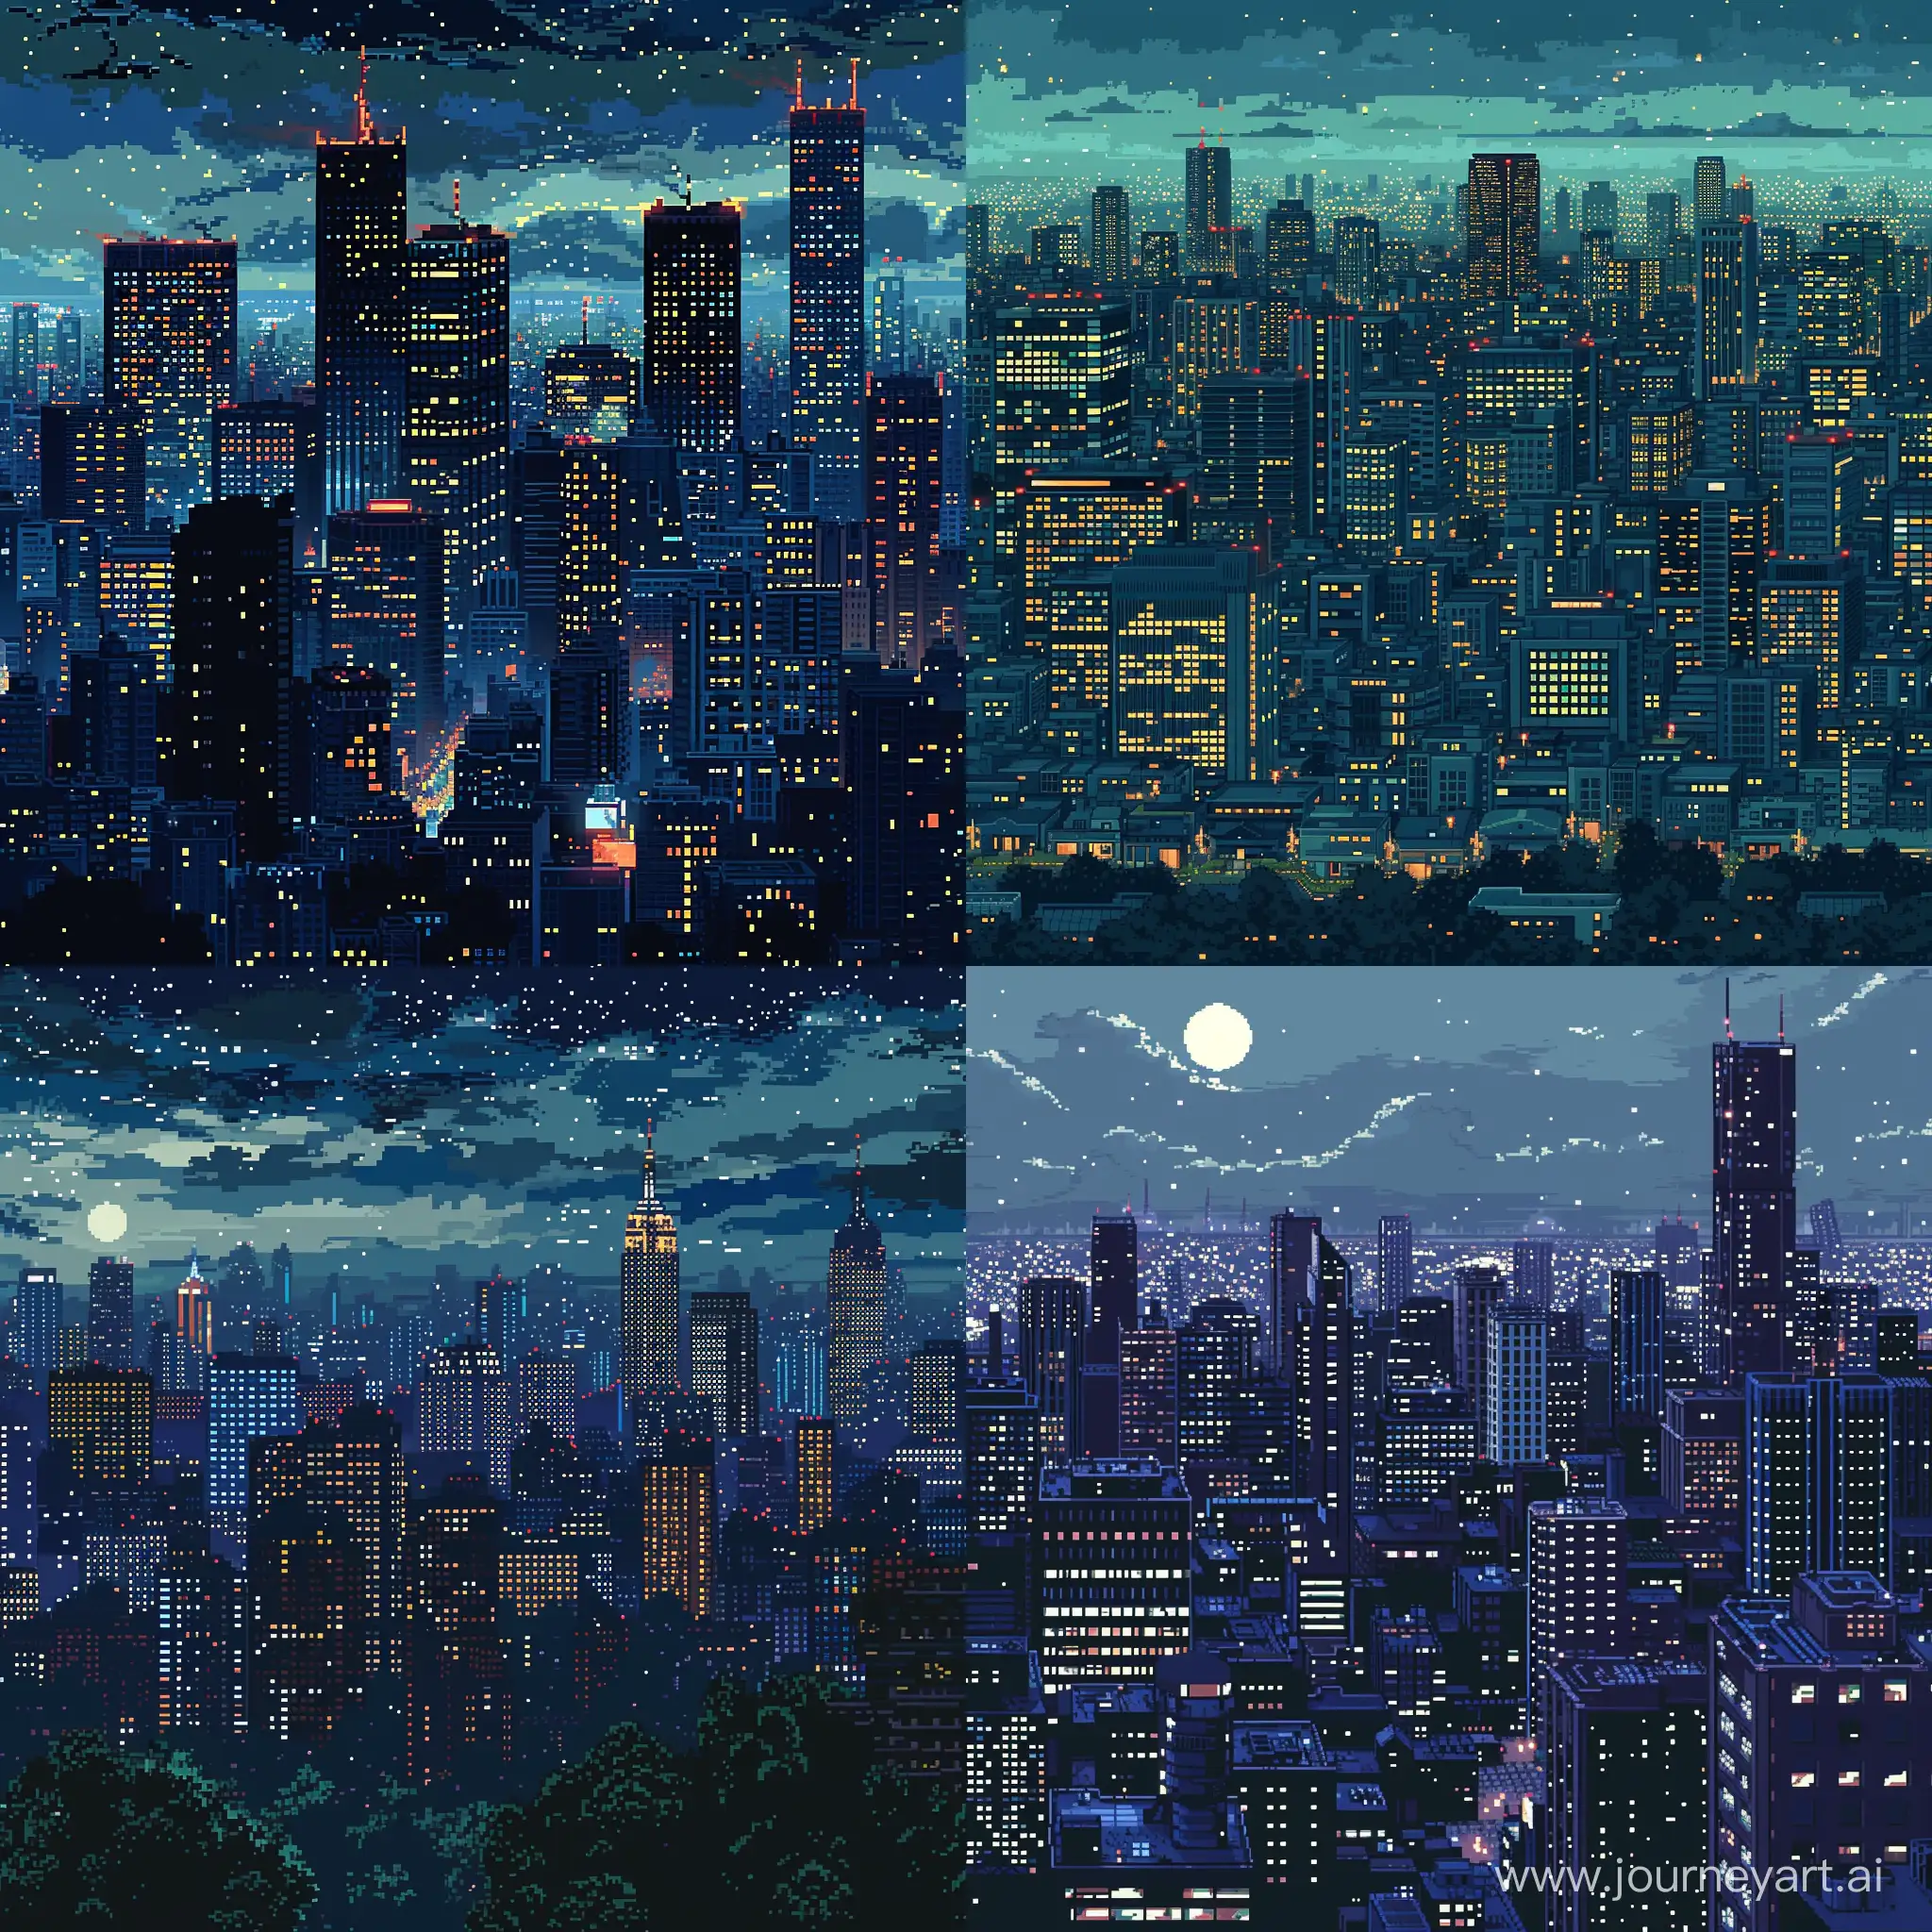 Retro-8Bit-Night-Cityscape-A-Darkened-Landscape-of-Illuminated-Urban-Architecture